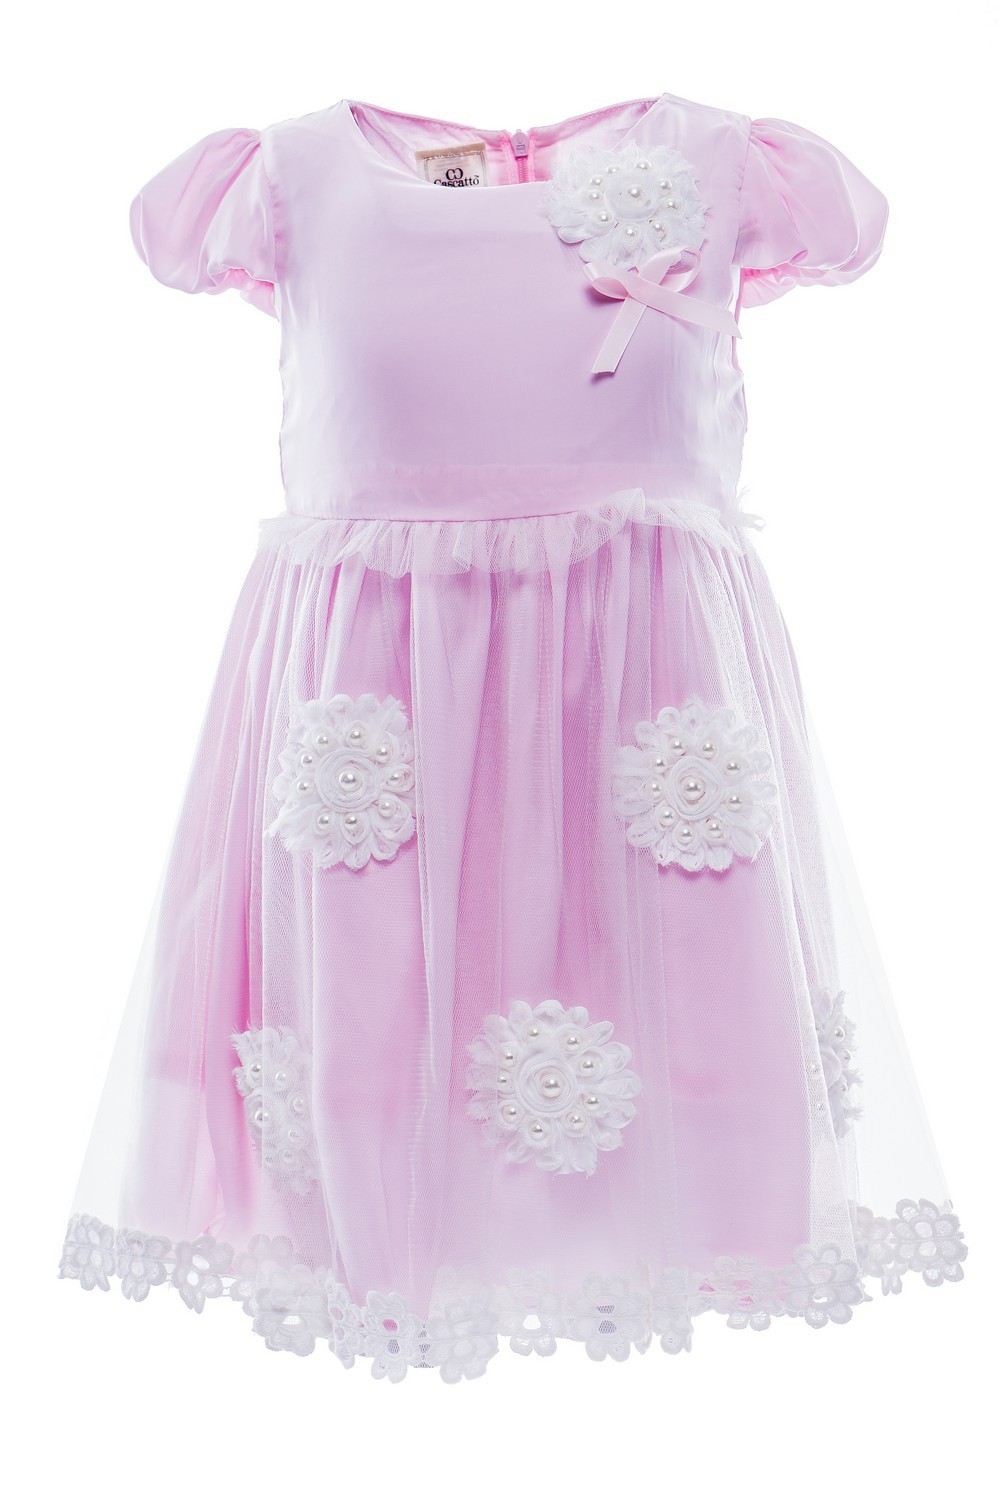 Купить Платье для девочки PL91 розовый